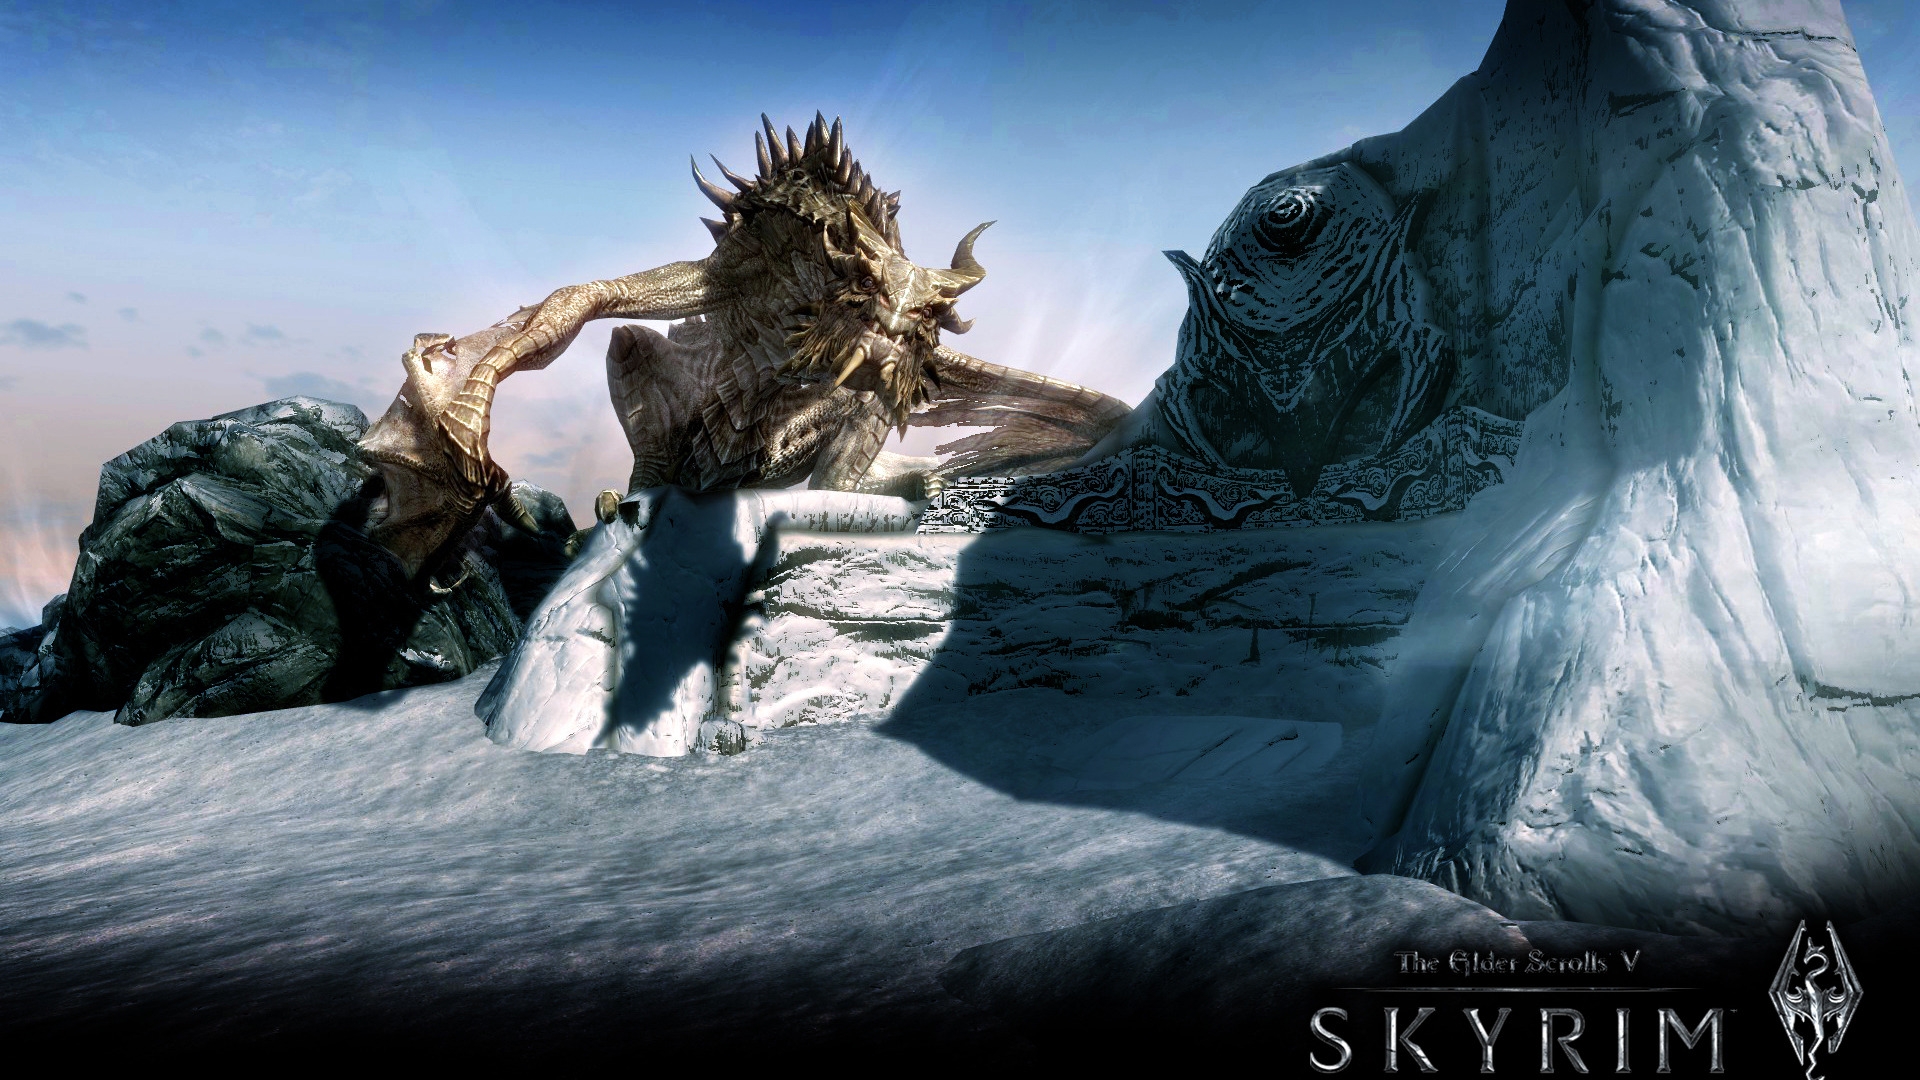 Skyrim The Elder Scrolls V for 1920 x 1080 HDTV 1080p resolution